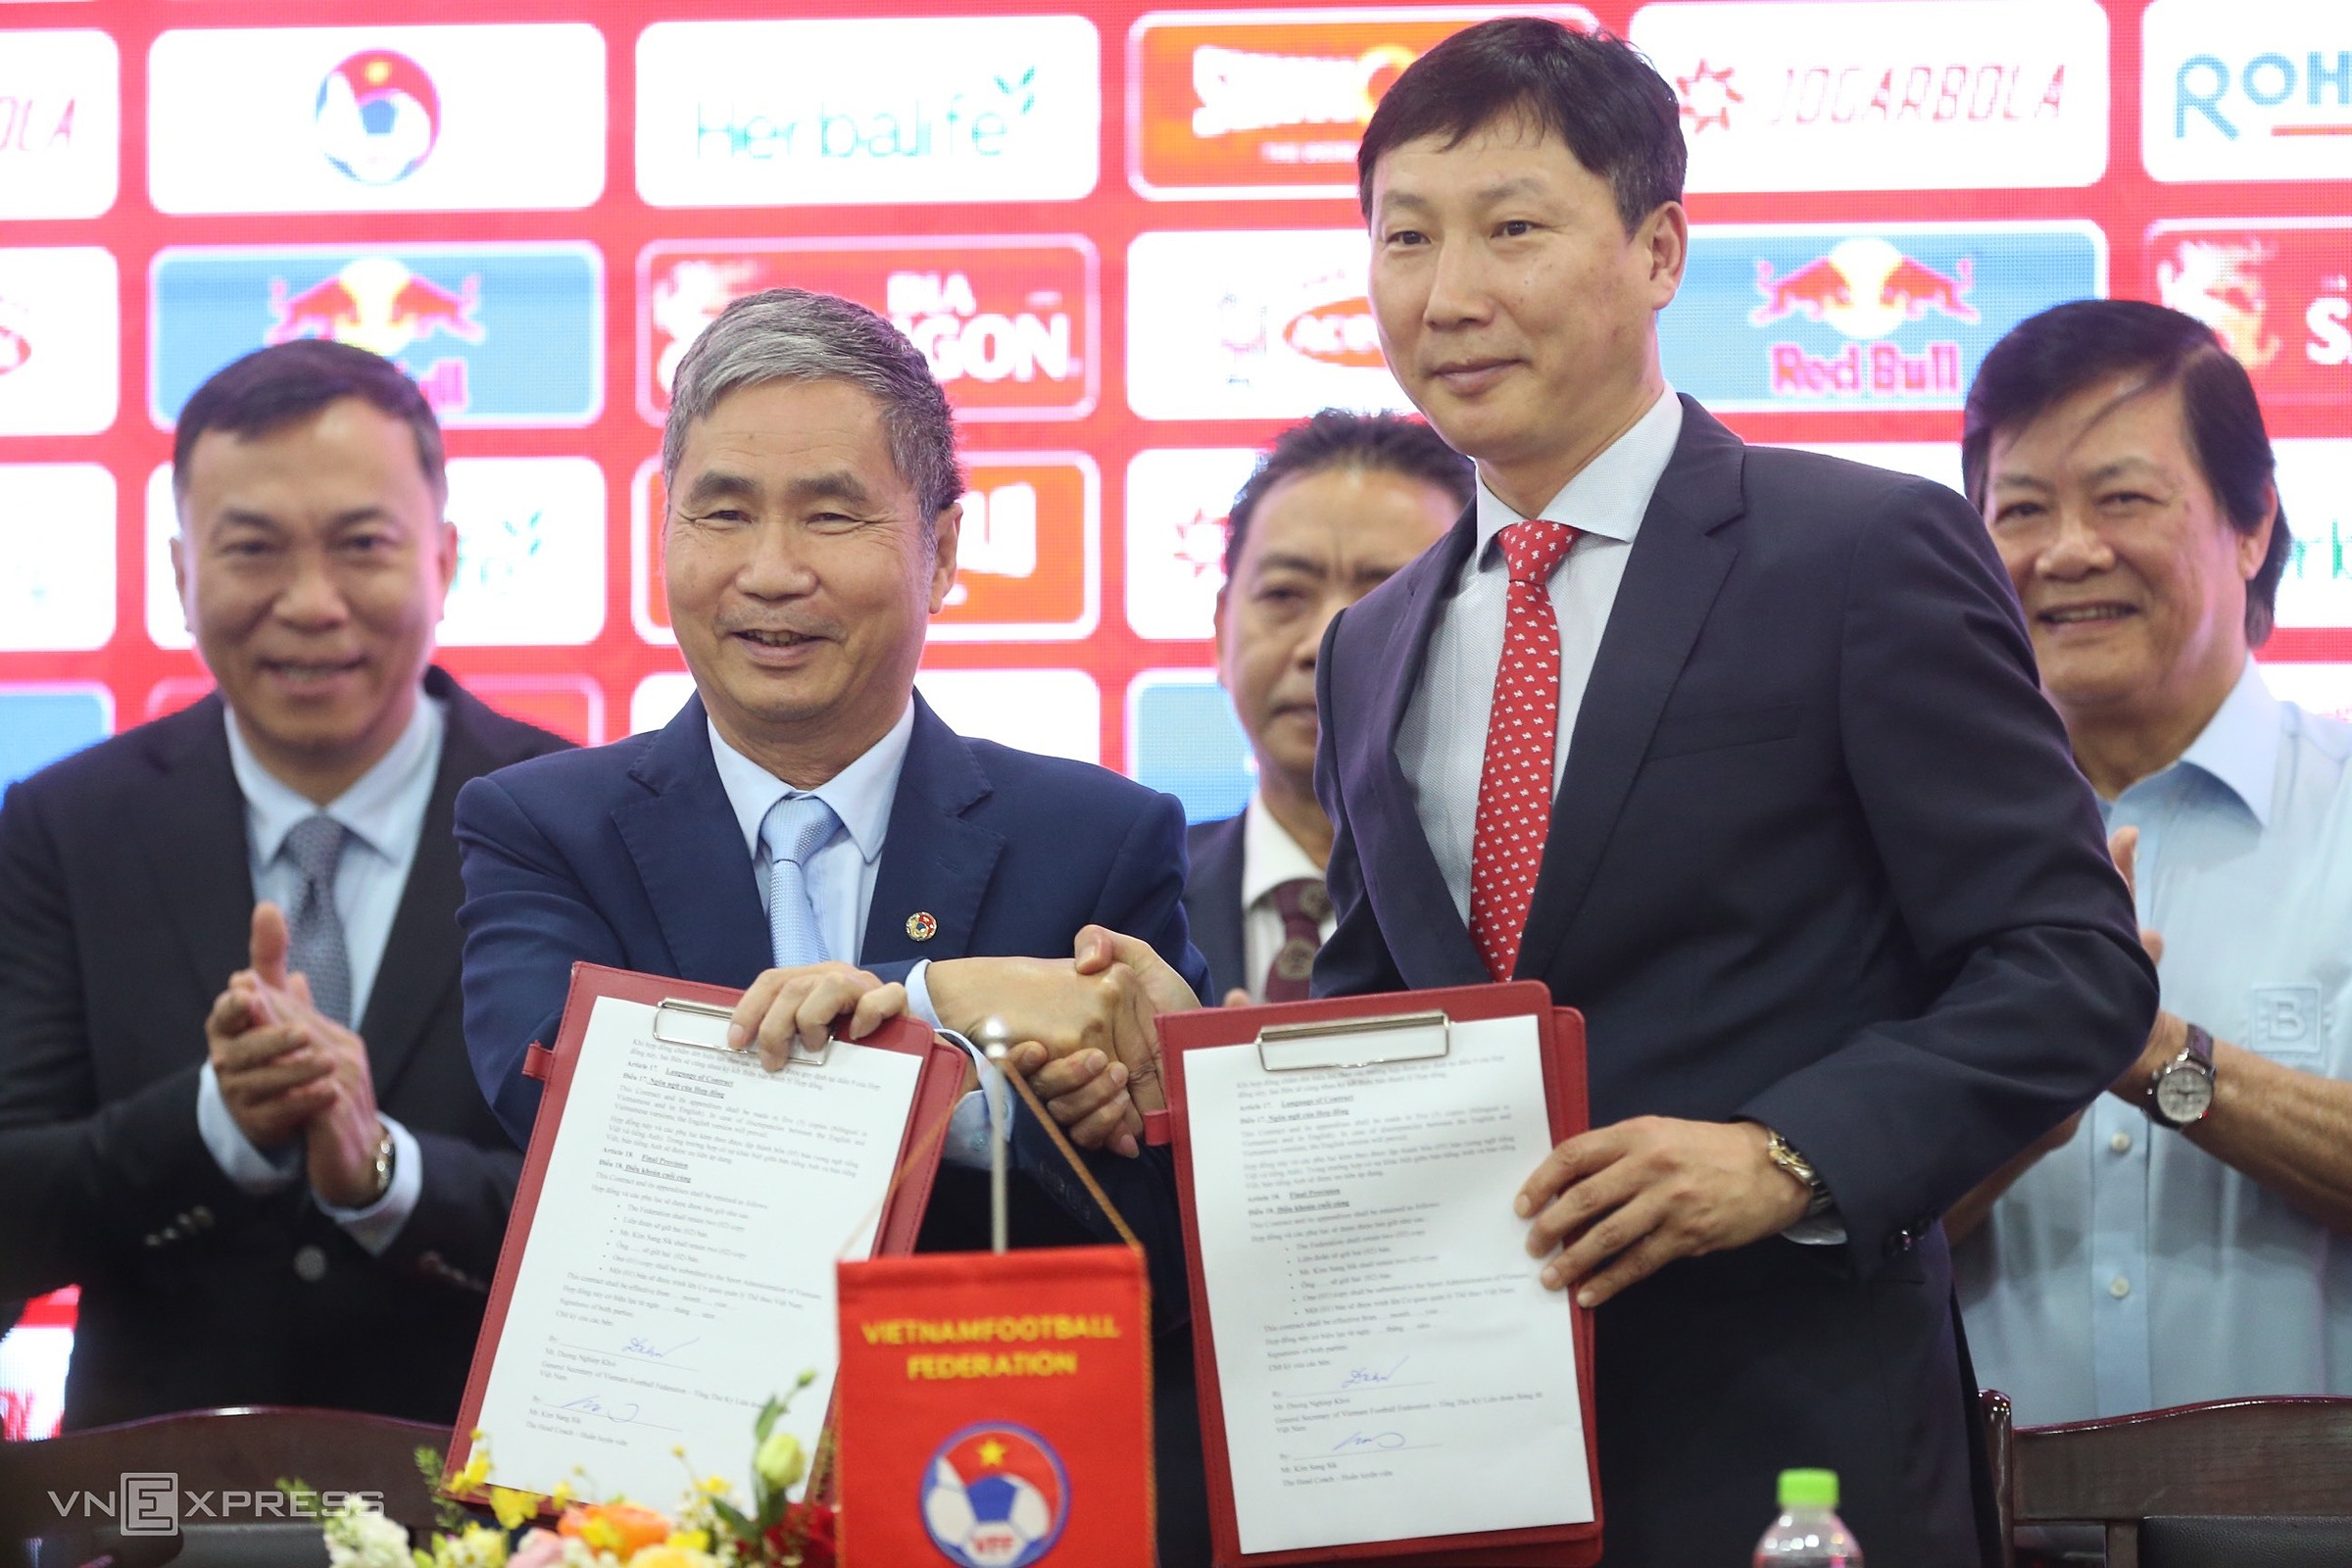 HLV Kim Sang Sik sẽ chọn những cầu thủ có phong độ cao nhất cho ĐT Việt Nam